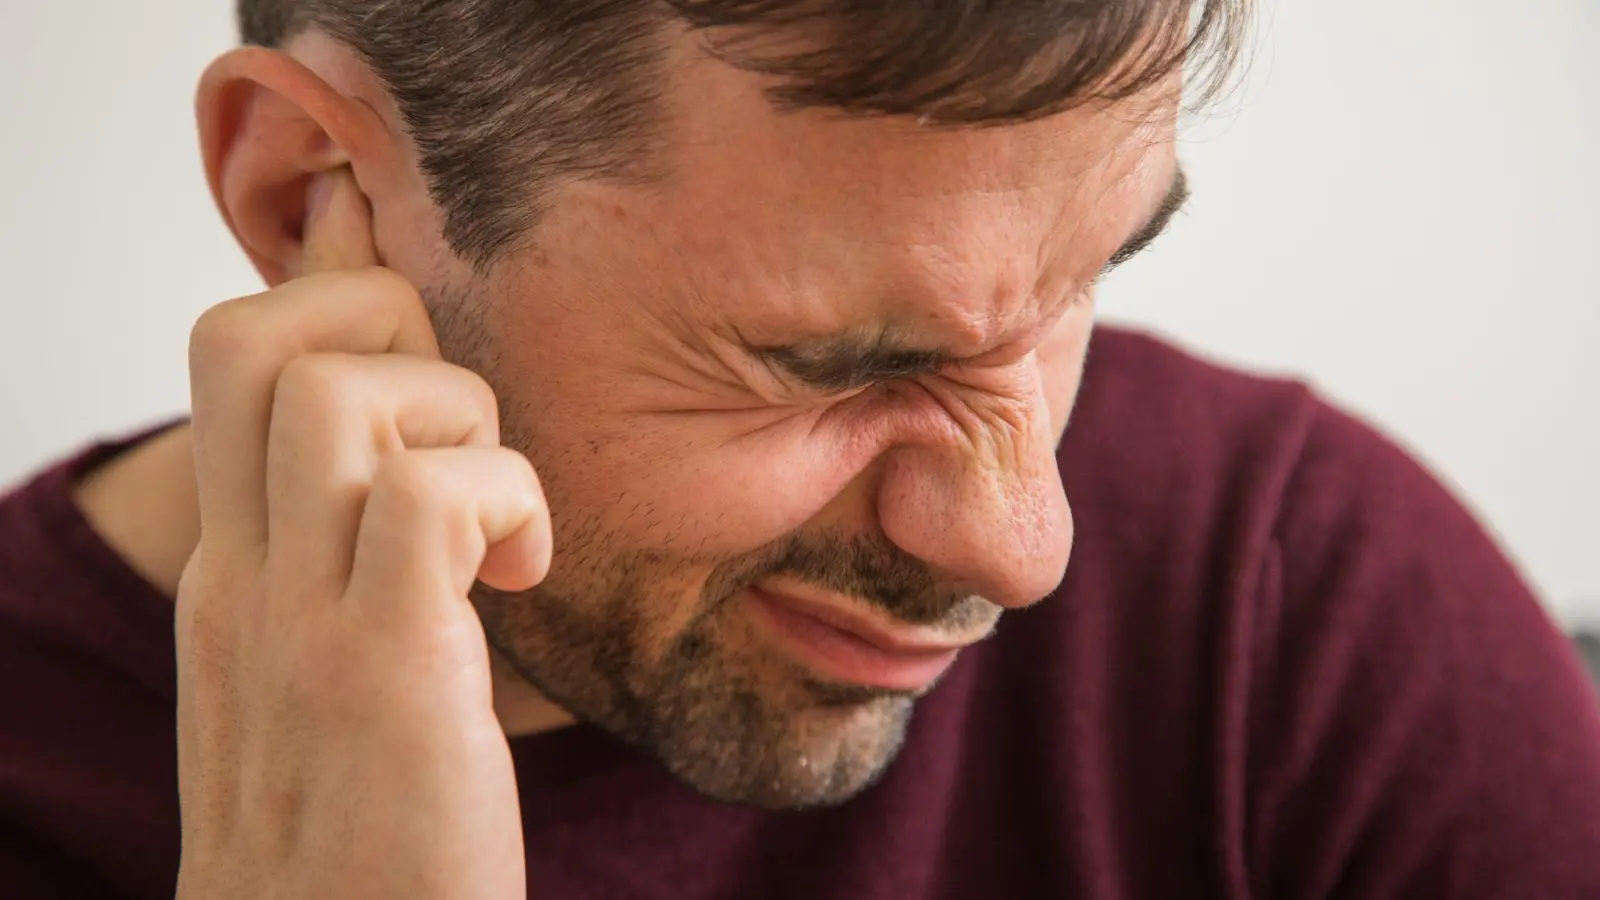 Wer plötzlich einen Druck im Ohr hat oder etwa Geräusche verändert wahrnimmt, könnte einen Hörsturz haben. (Foto: Christin Klose/dpa-tmn)